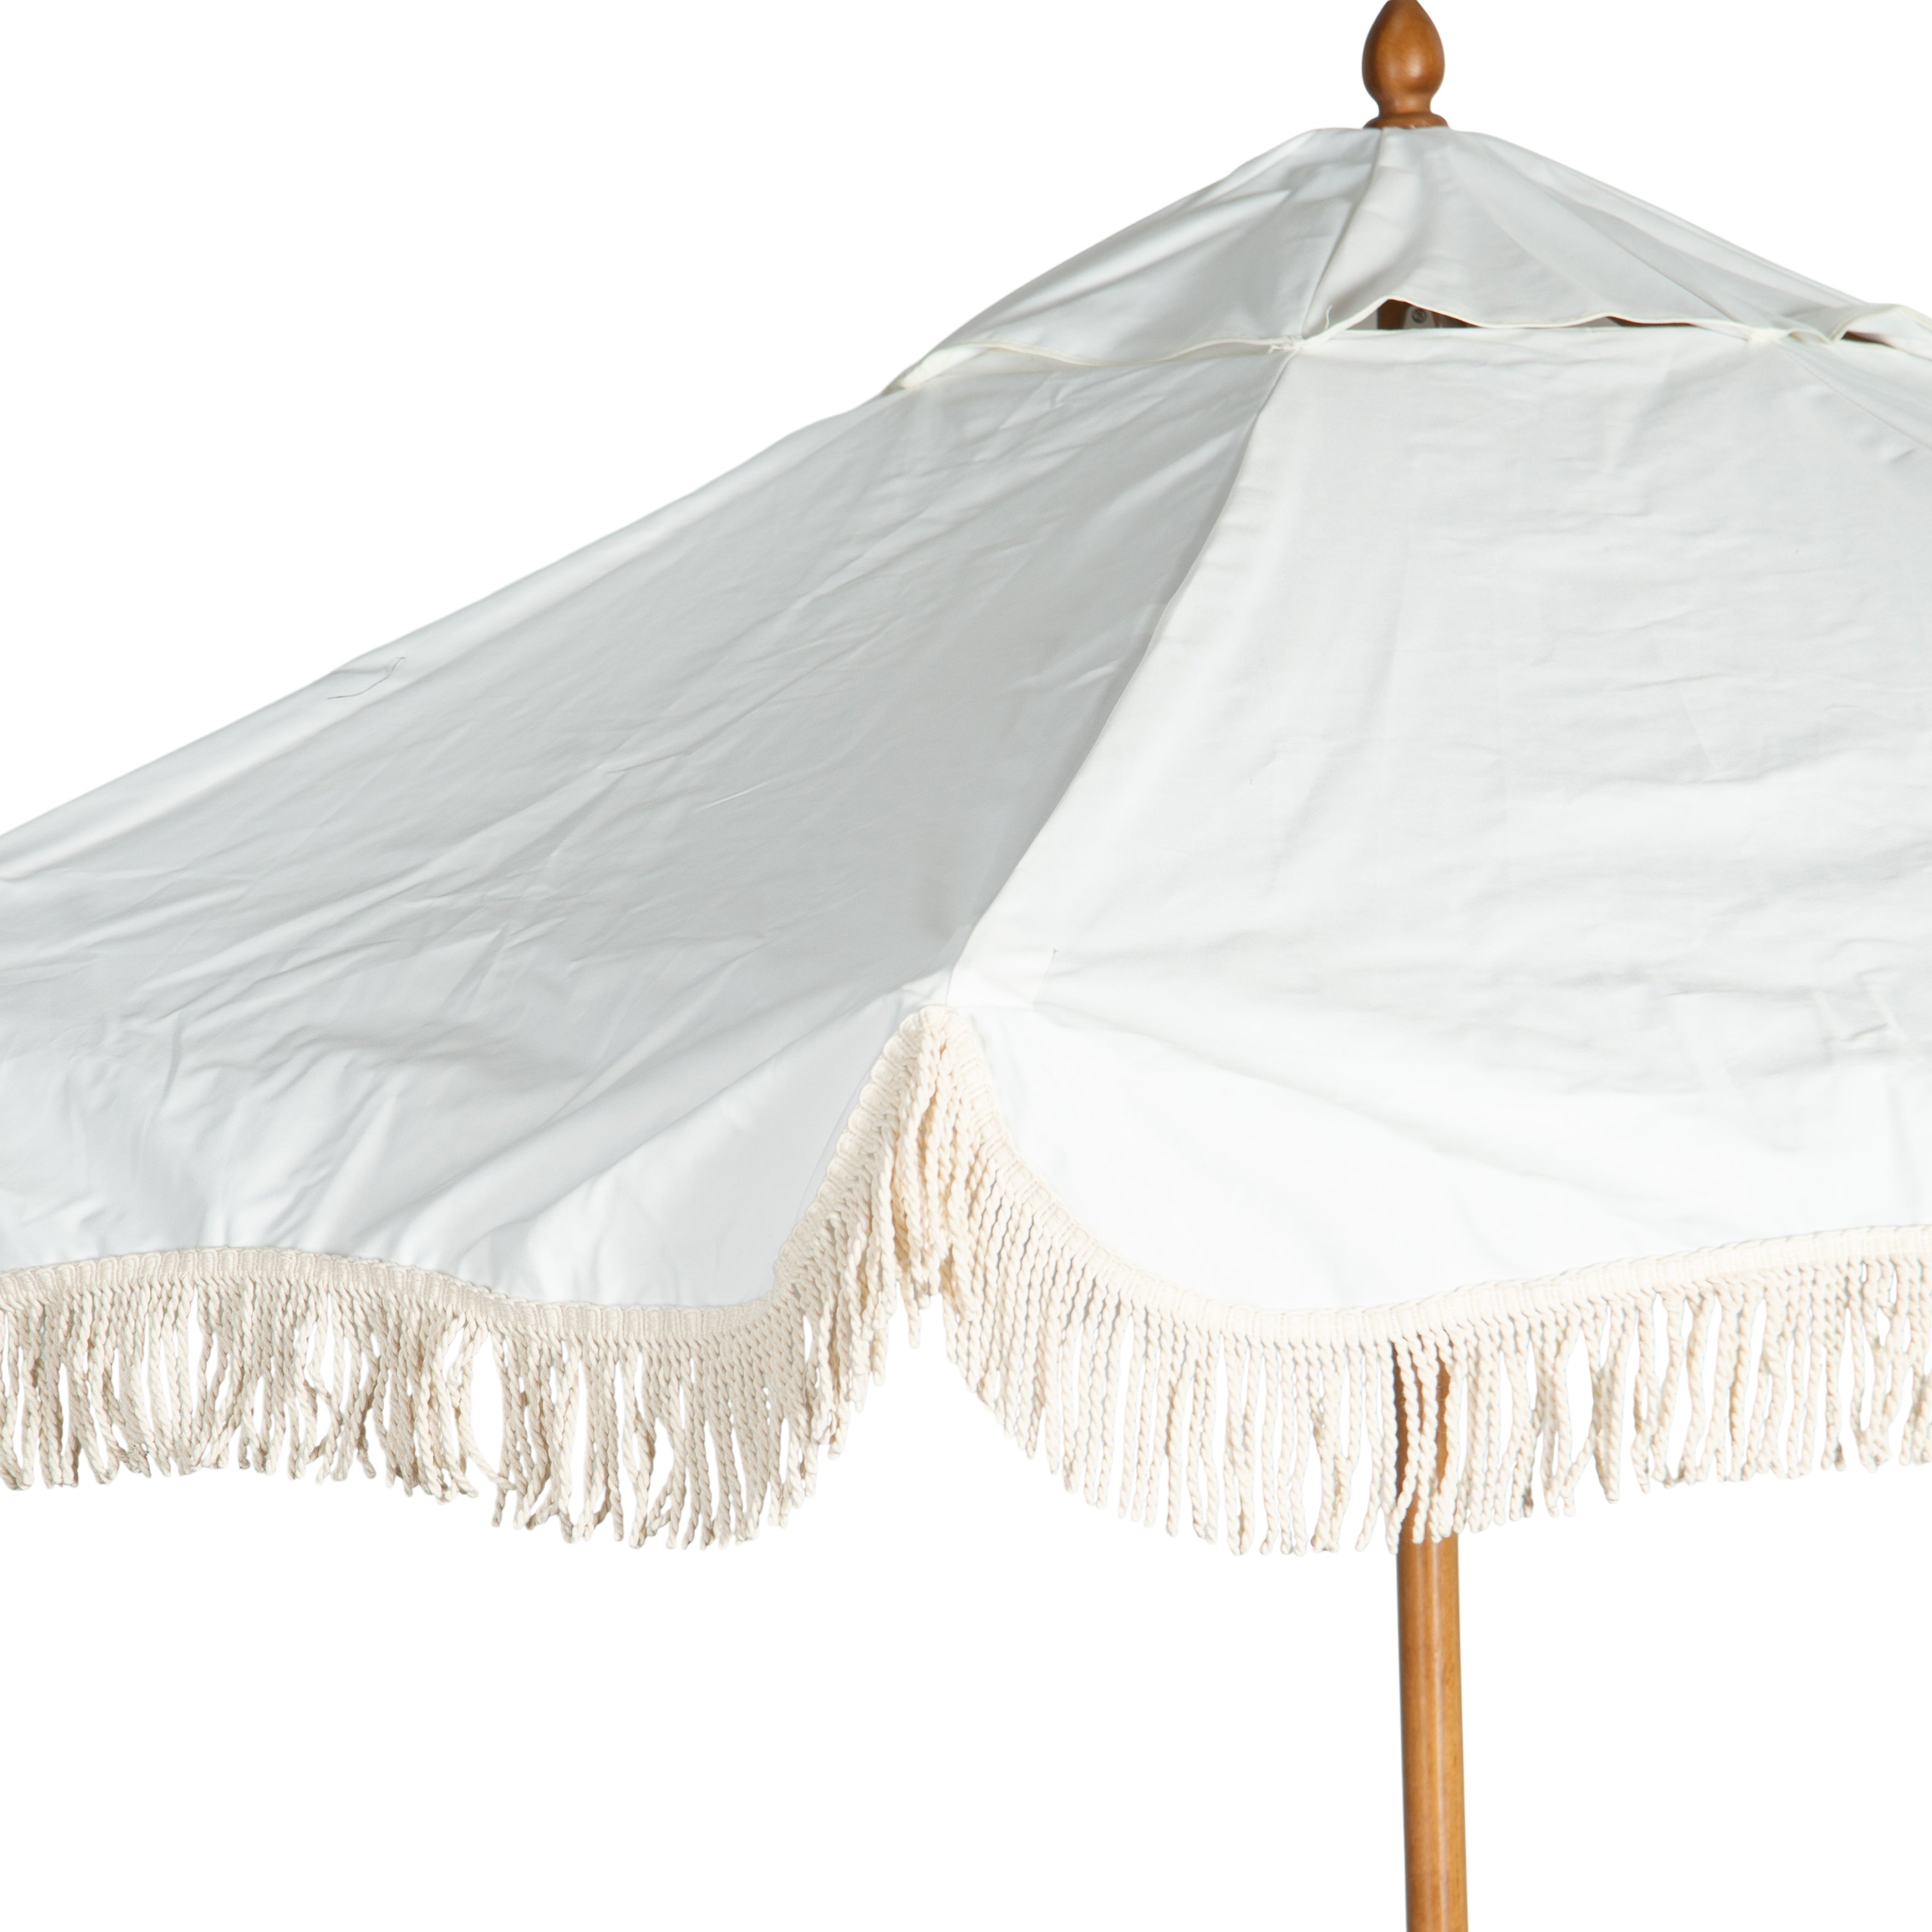 Sunny Grande White Umbrella